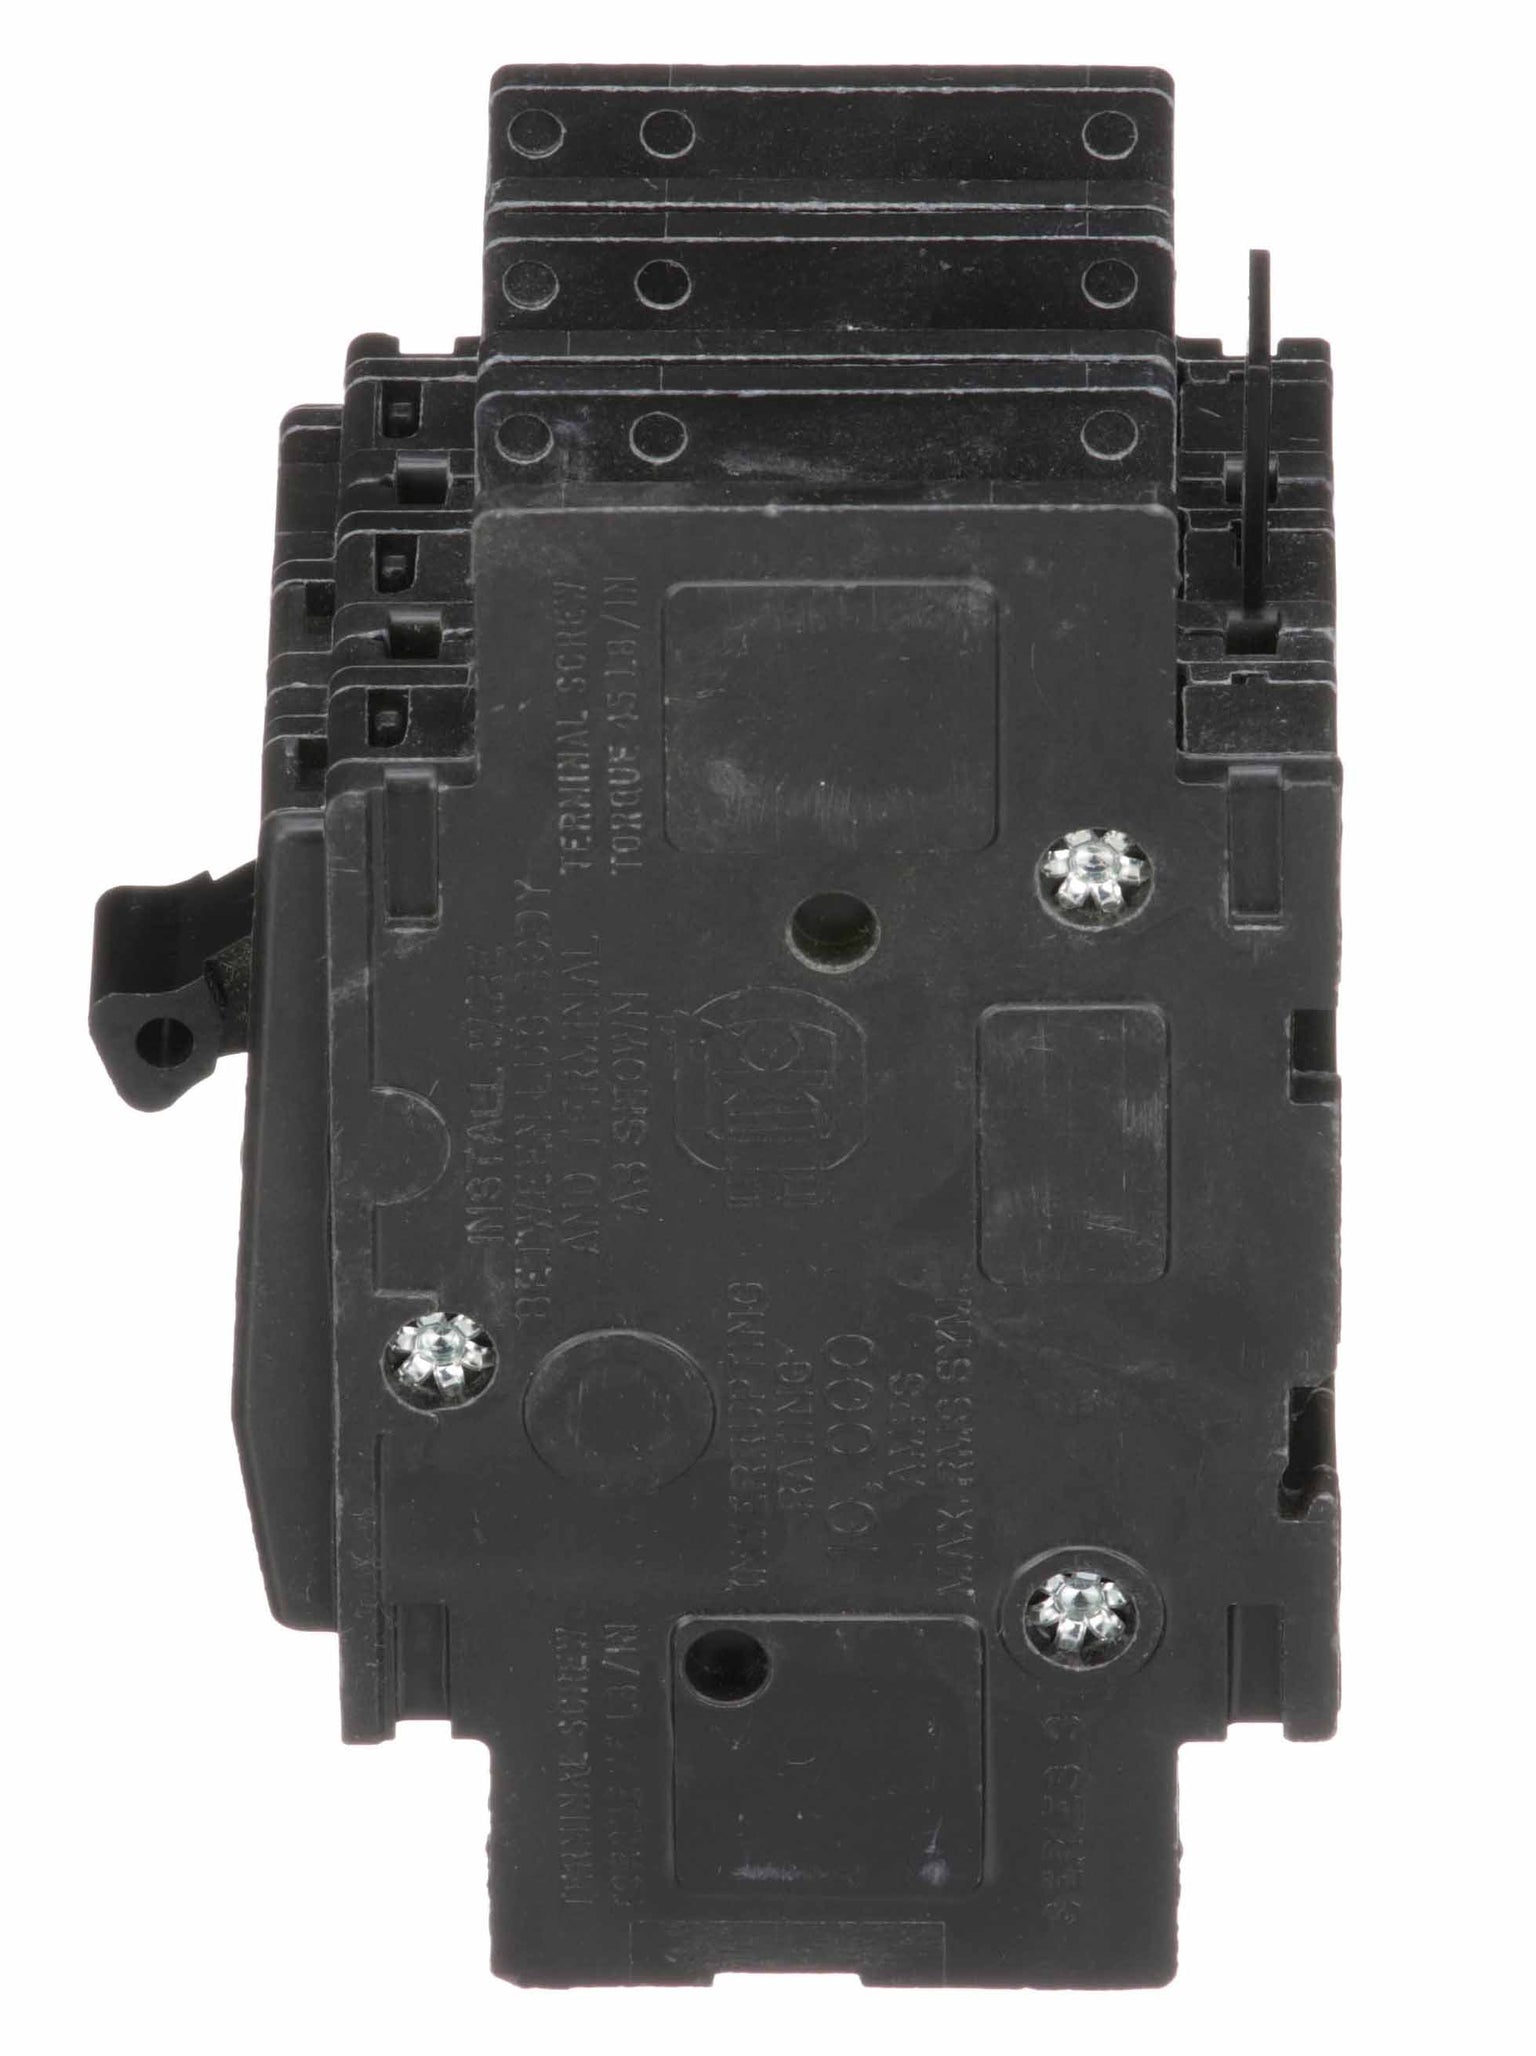 QOU345 - Square D - 45 Amp Circuit Breaker